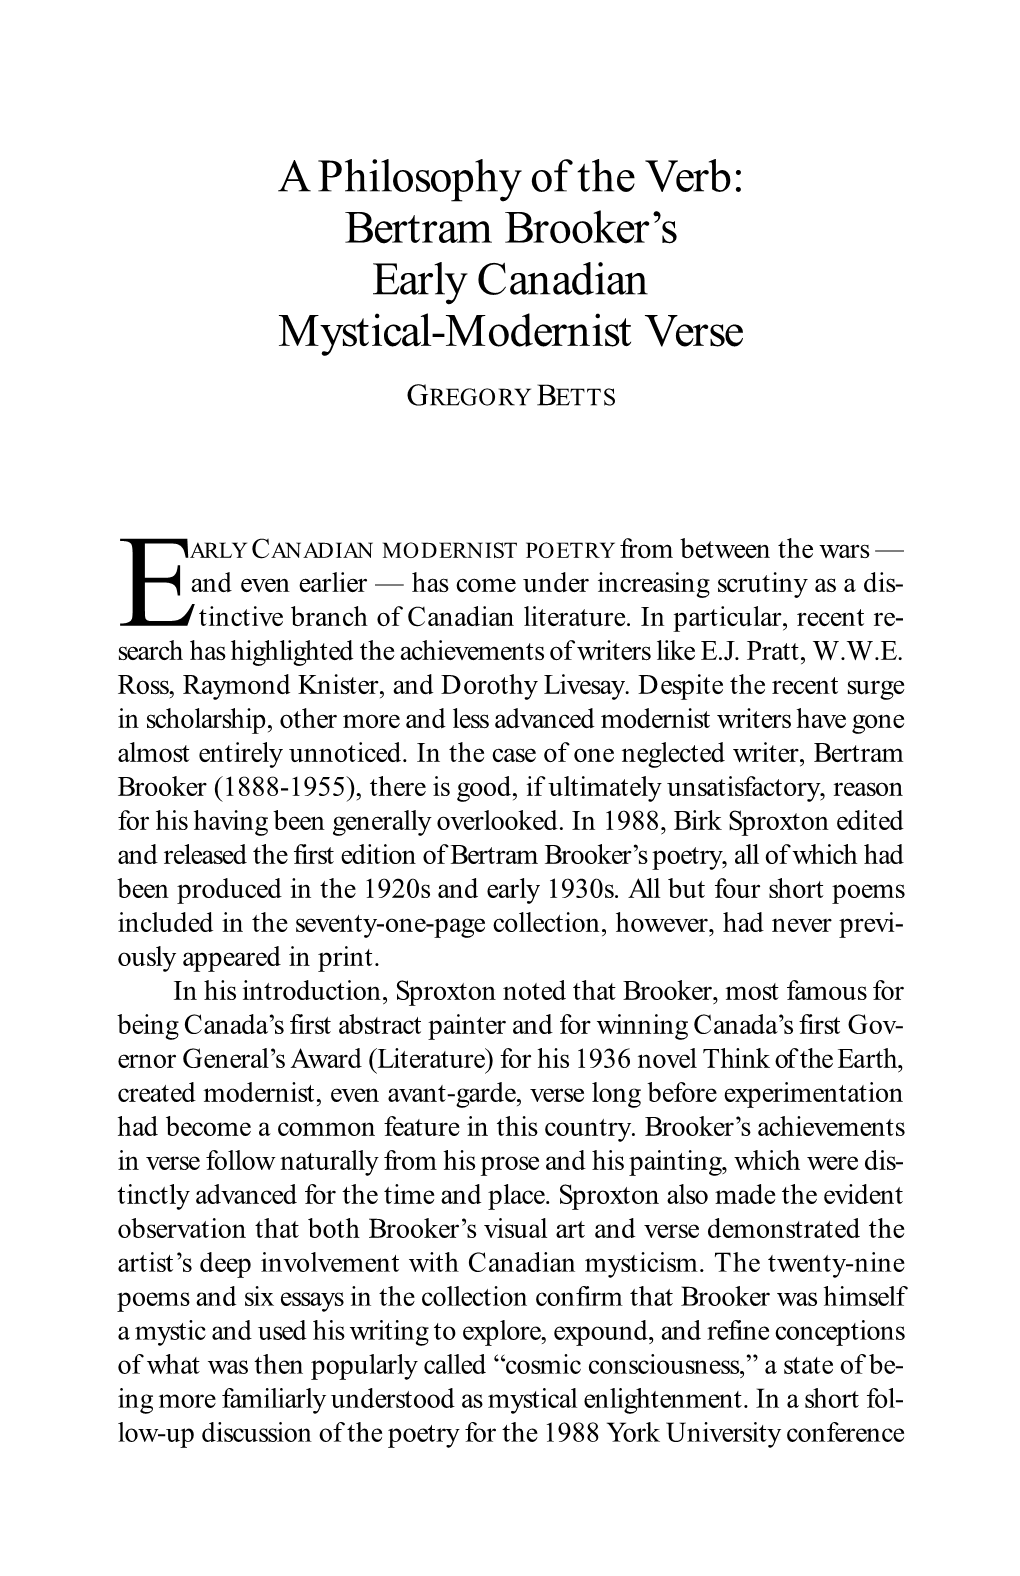 Bertram Brooker's Early Canadian Mystical-Modernist Verse